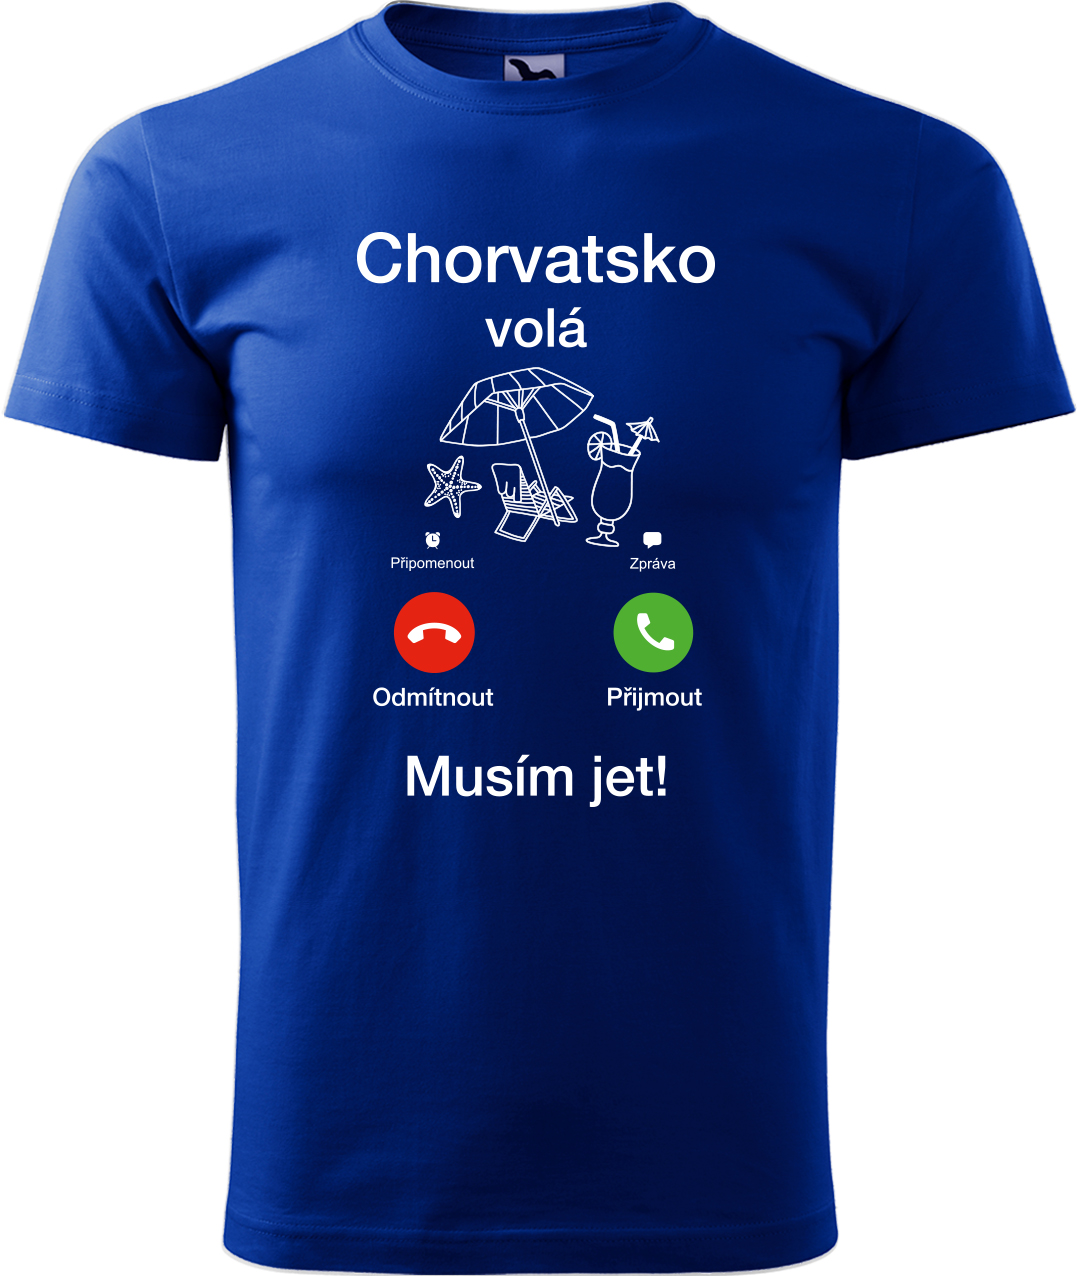 Pánské cestovatelské tričko - Chorvatsko volá - musím jet! Velikost: S, Barva: Královská modrá (05), Střih: pánský